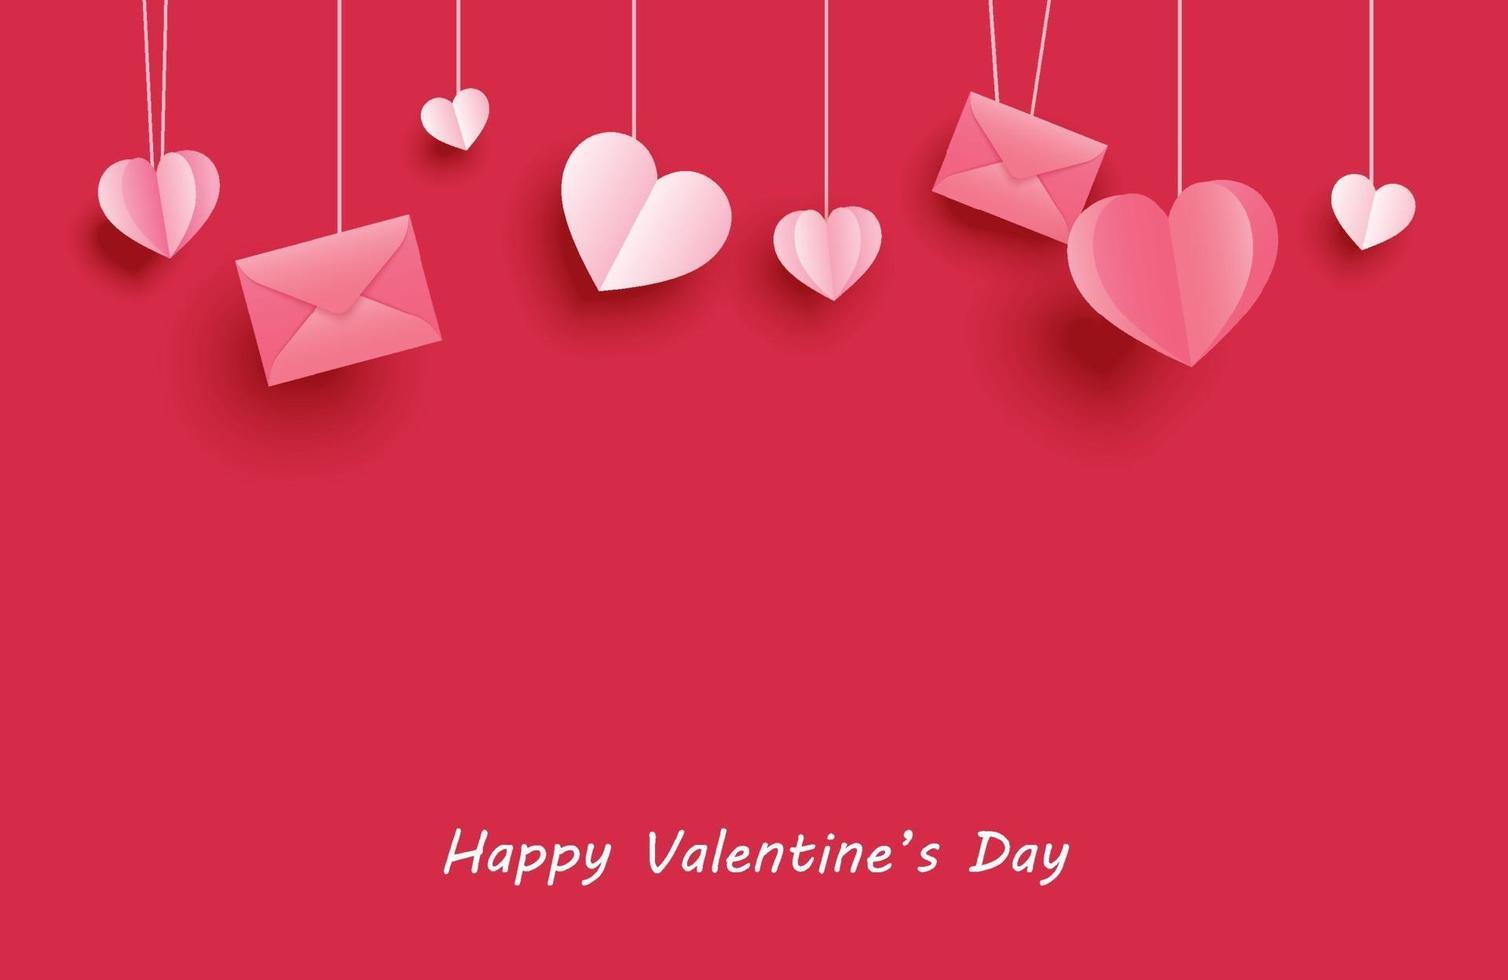 glad Alla hjärtans dag gratulationskort med papper hjärtan hängande på röd pastell bakgrund. vektor